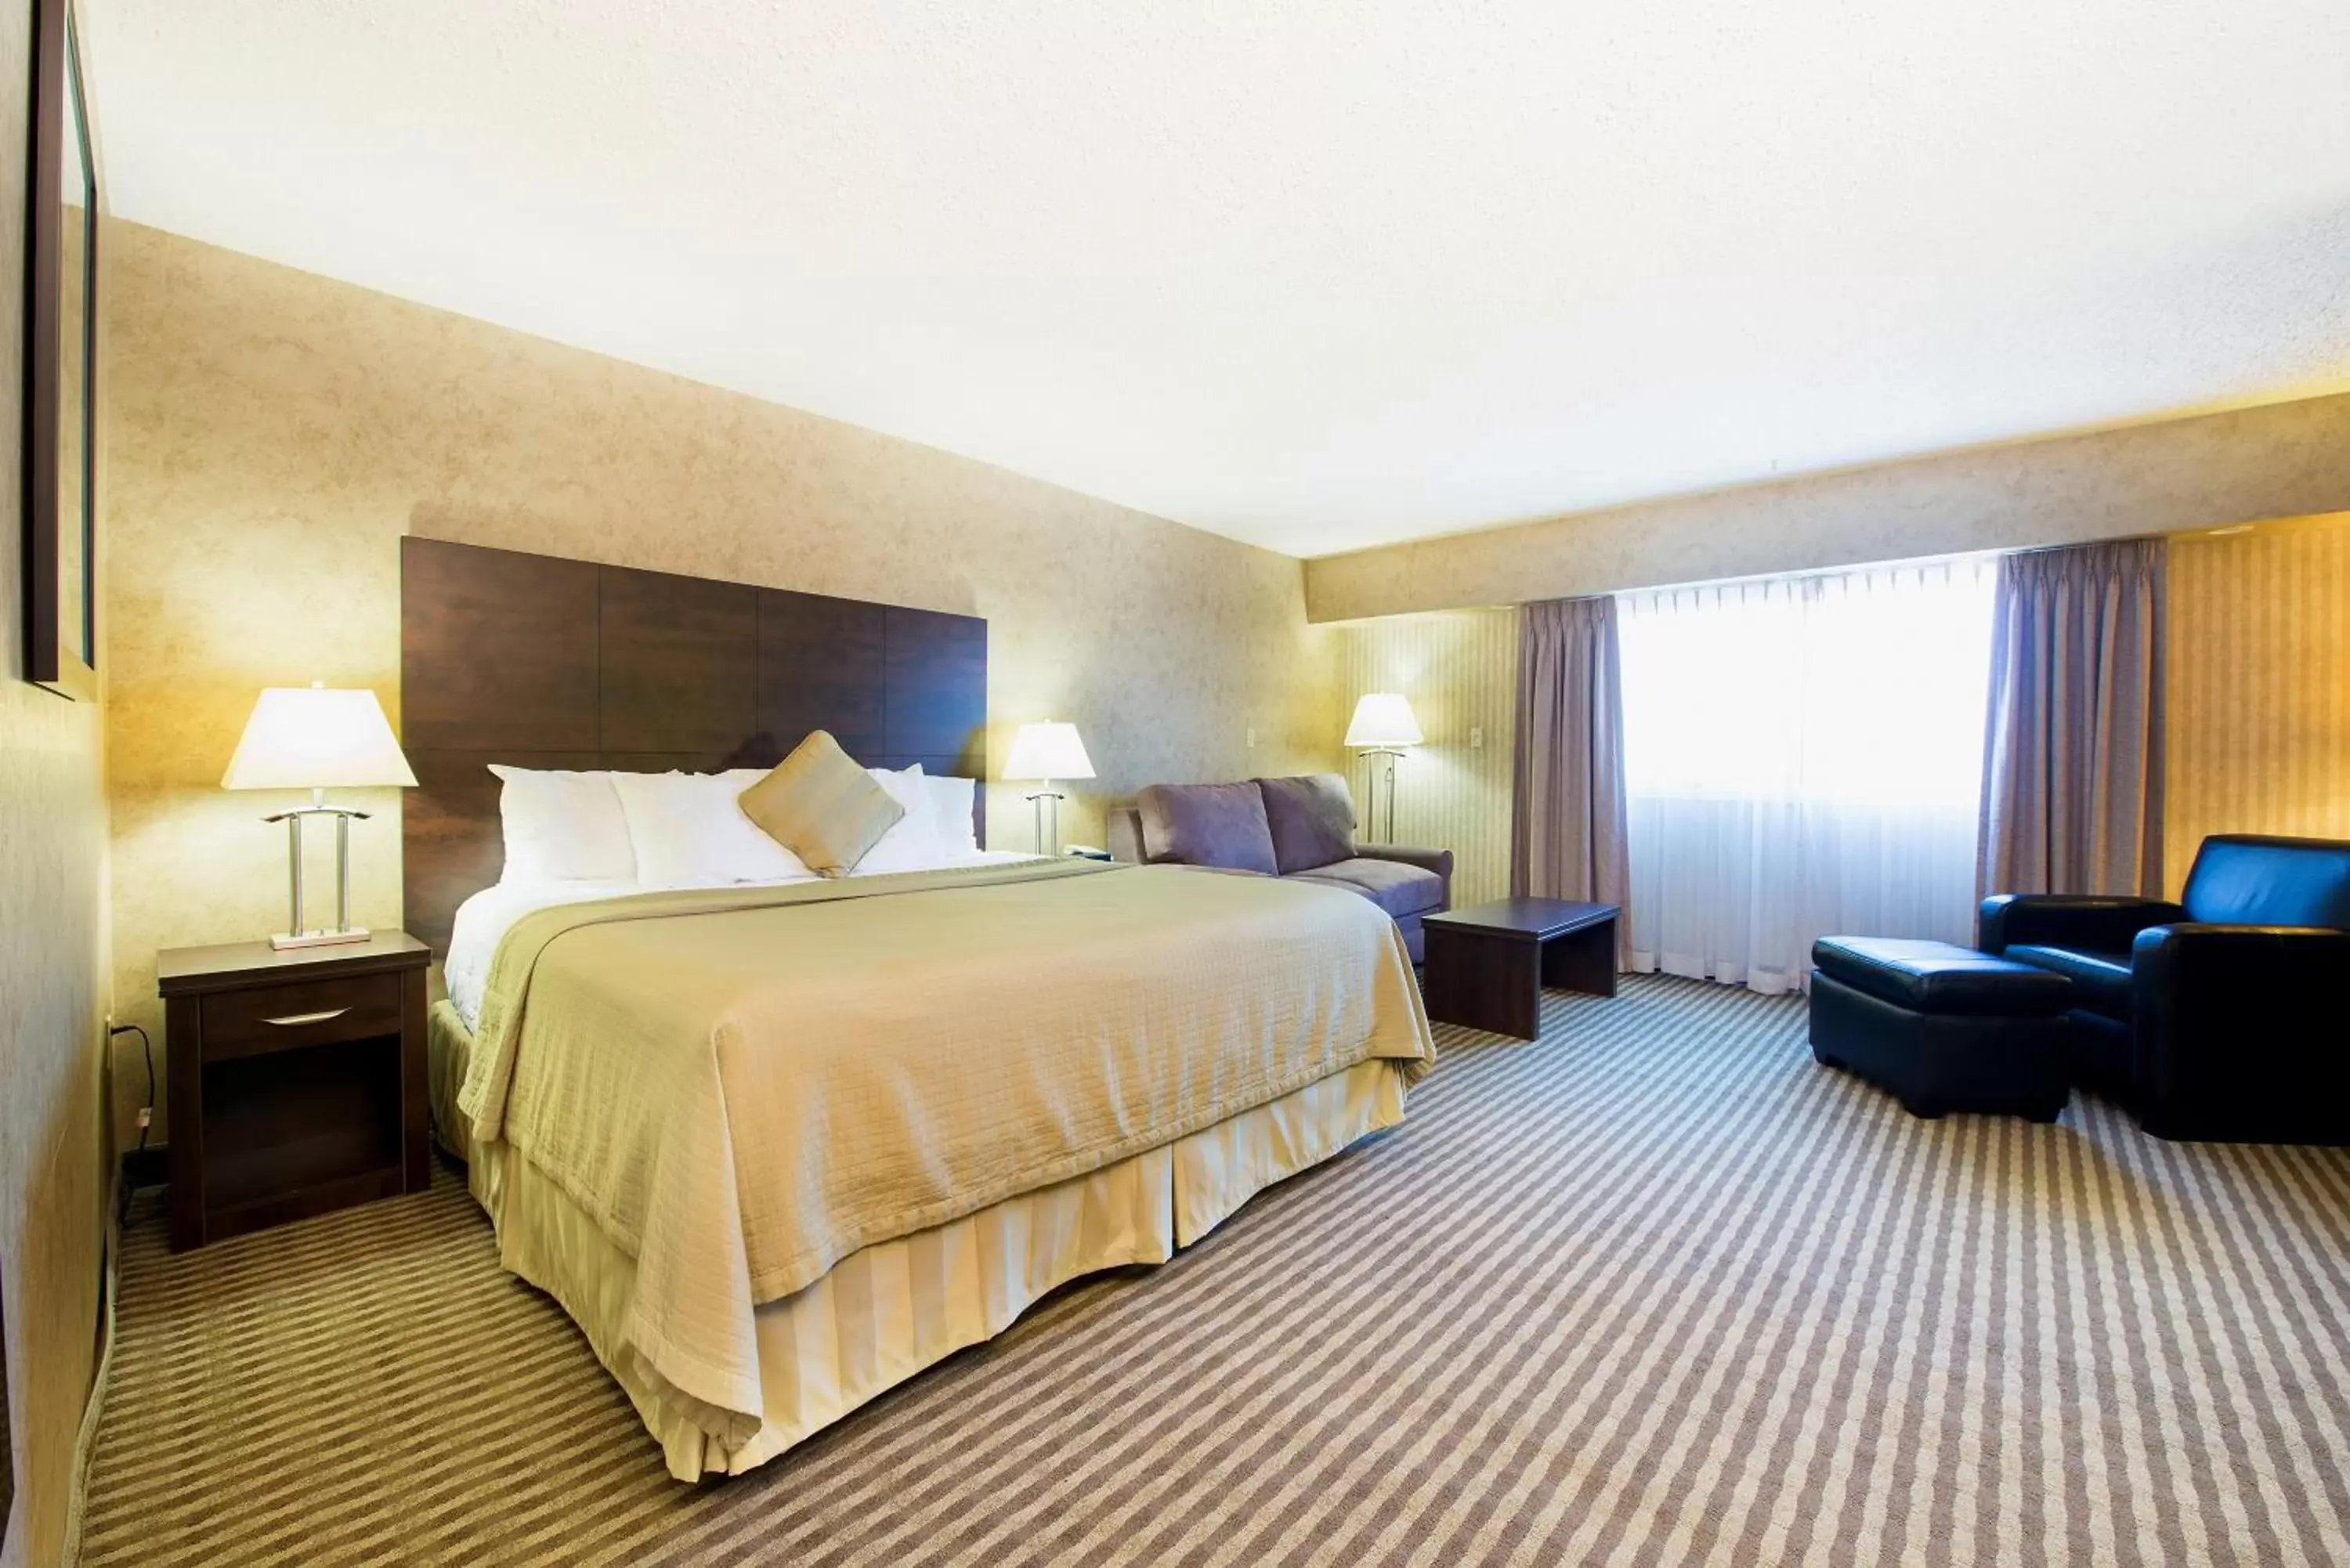 Bed in Victoria Inn Hotel & Convention Centre Brandon